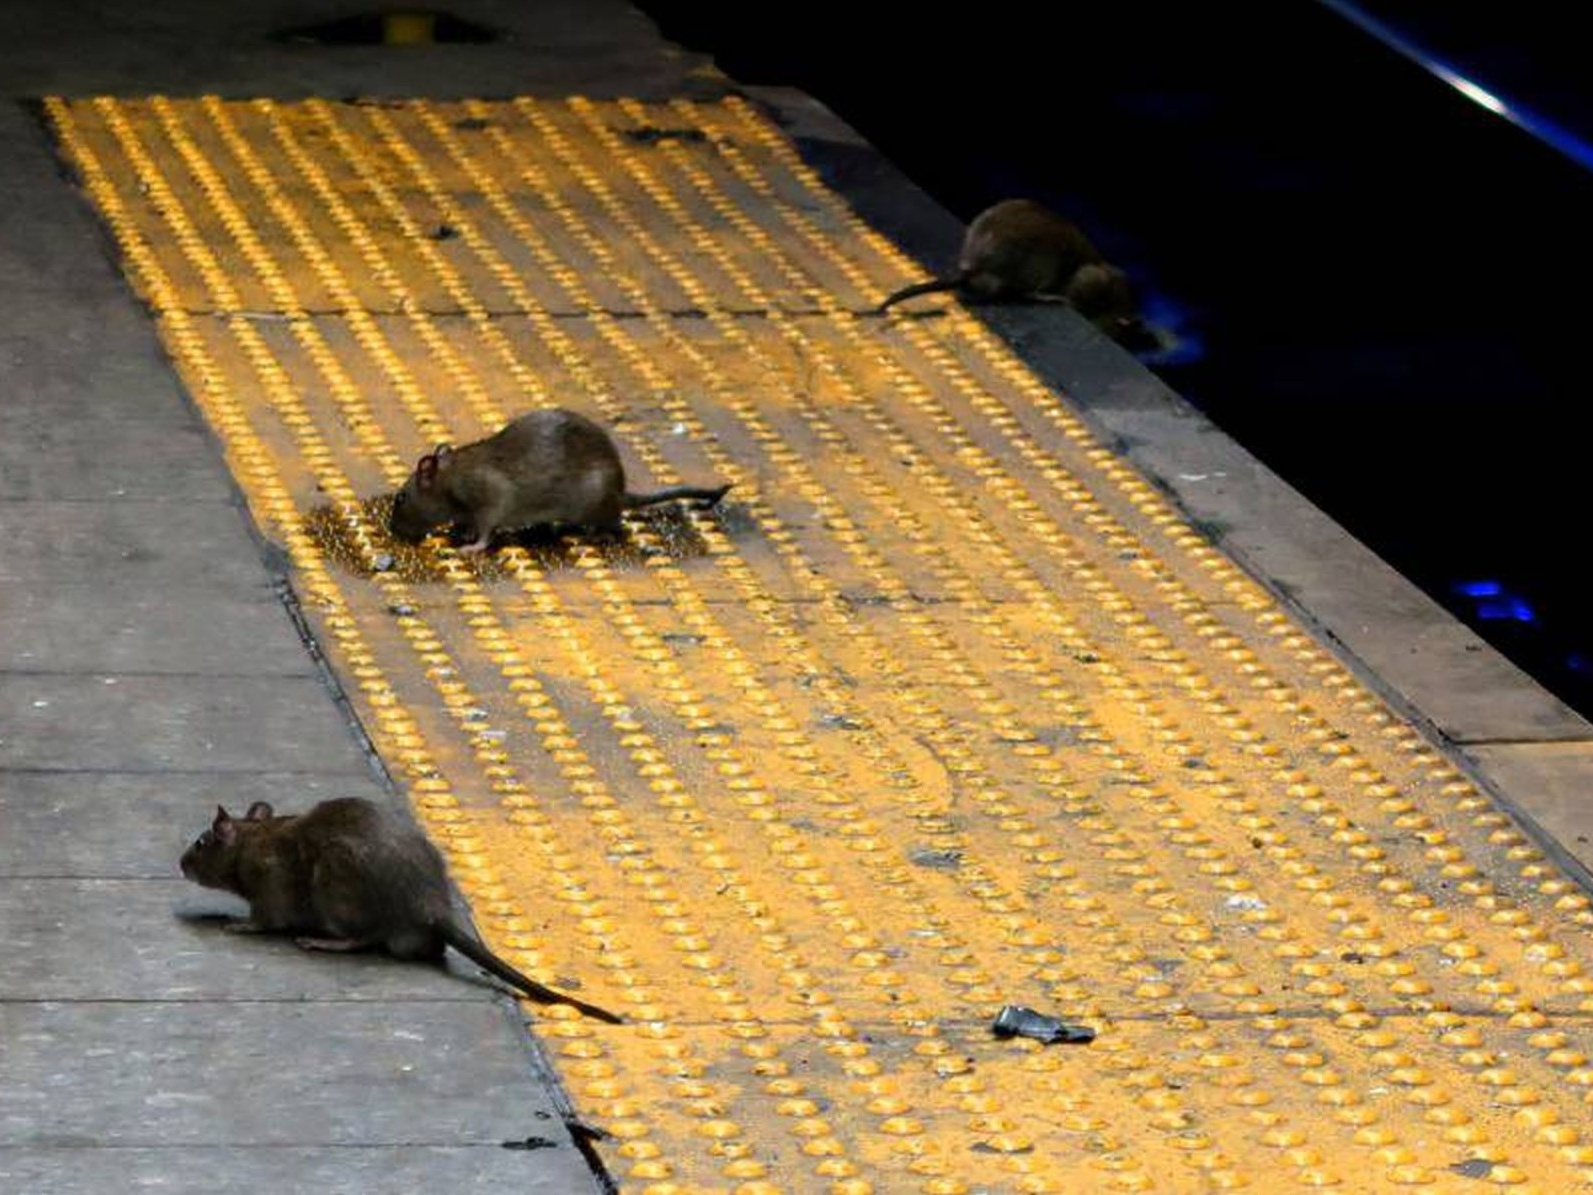 Ratos GIGANTES infestam cidade no IRÃ?